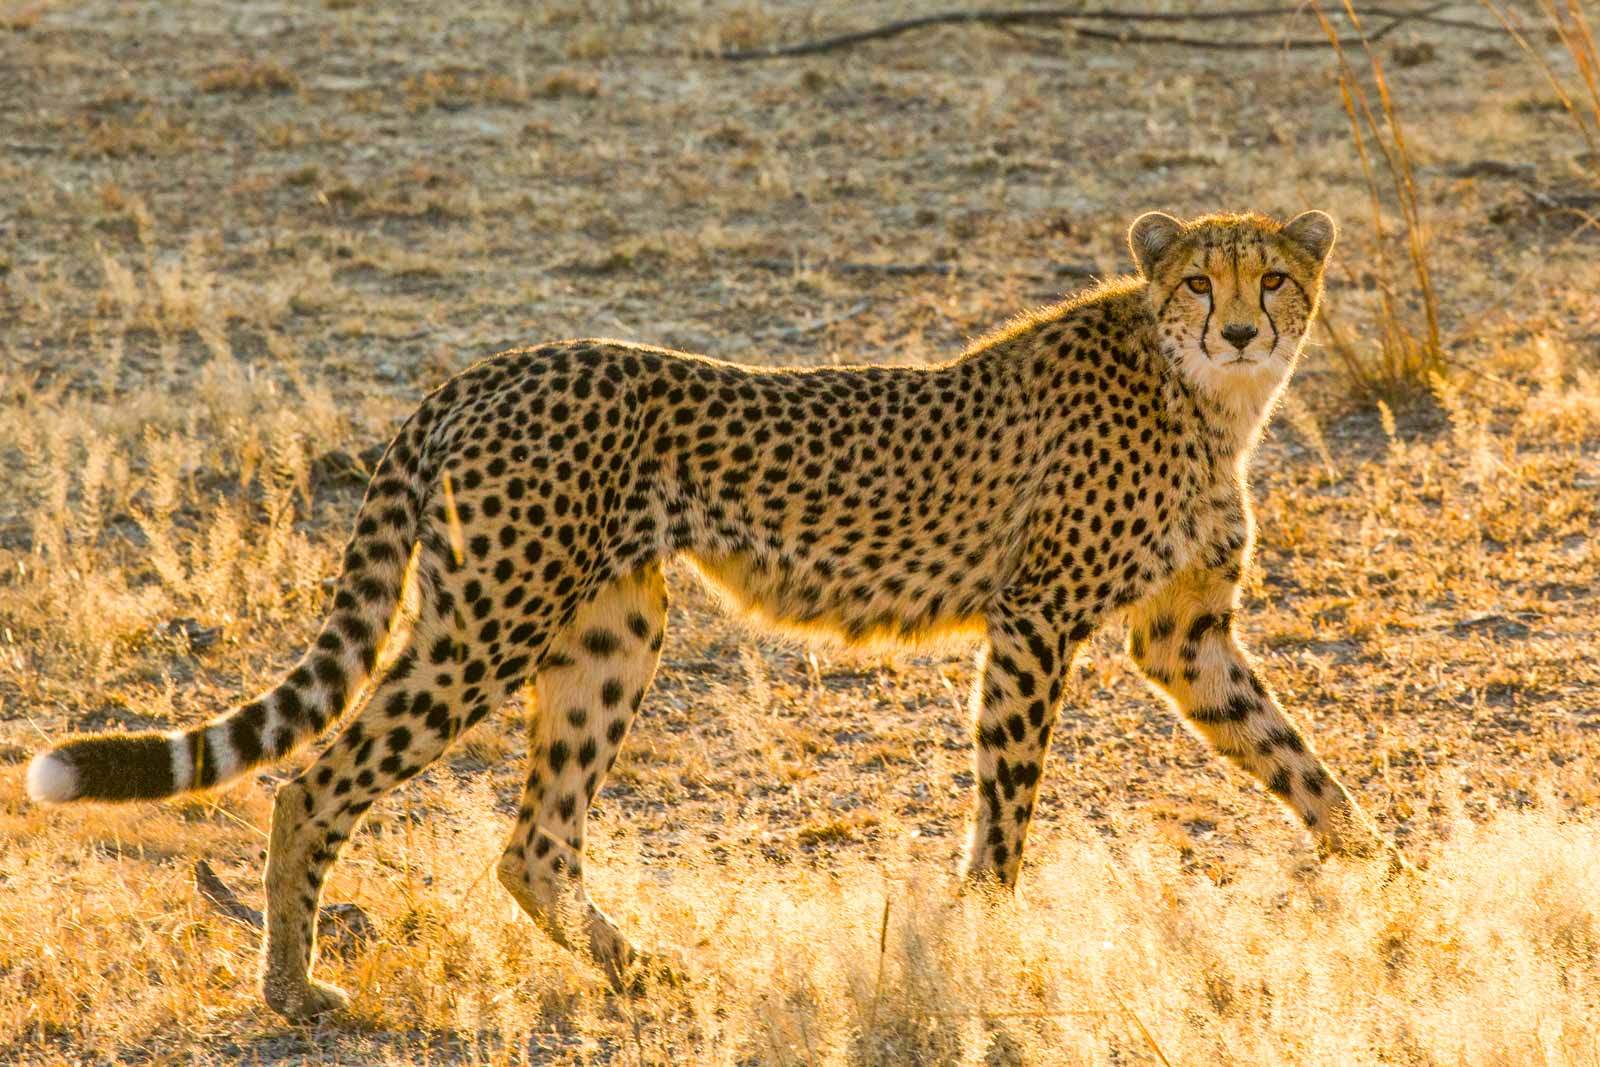 Cheetah at sunrise